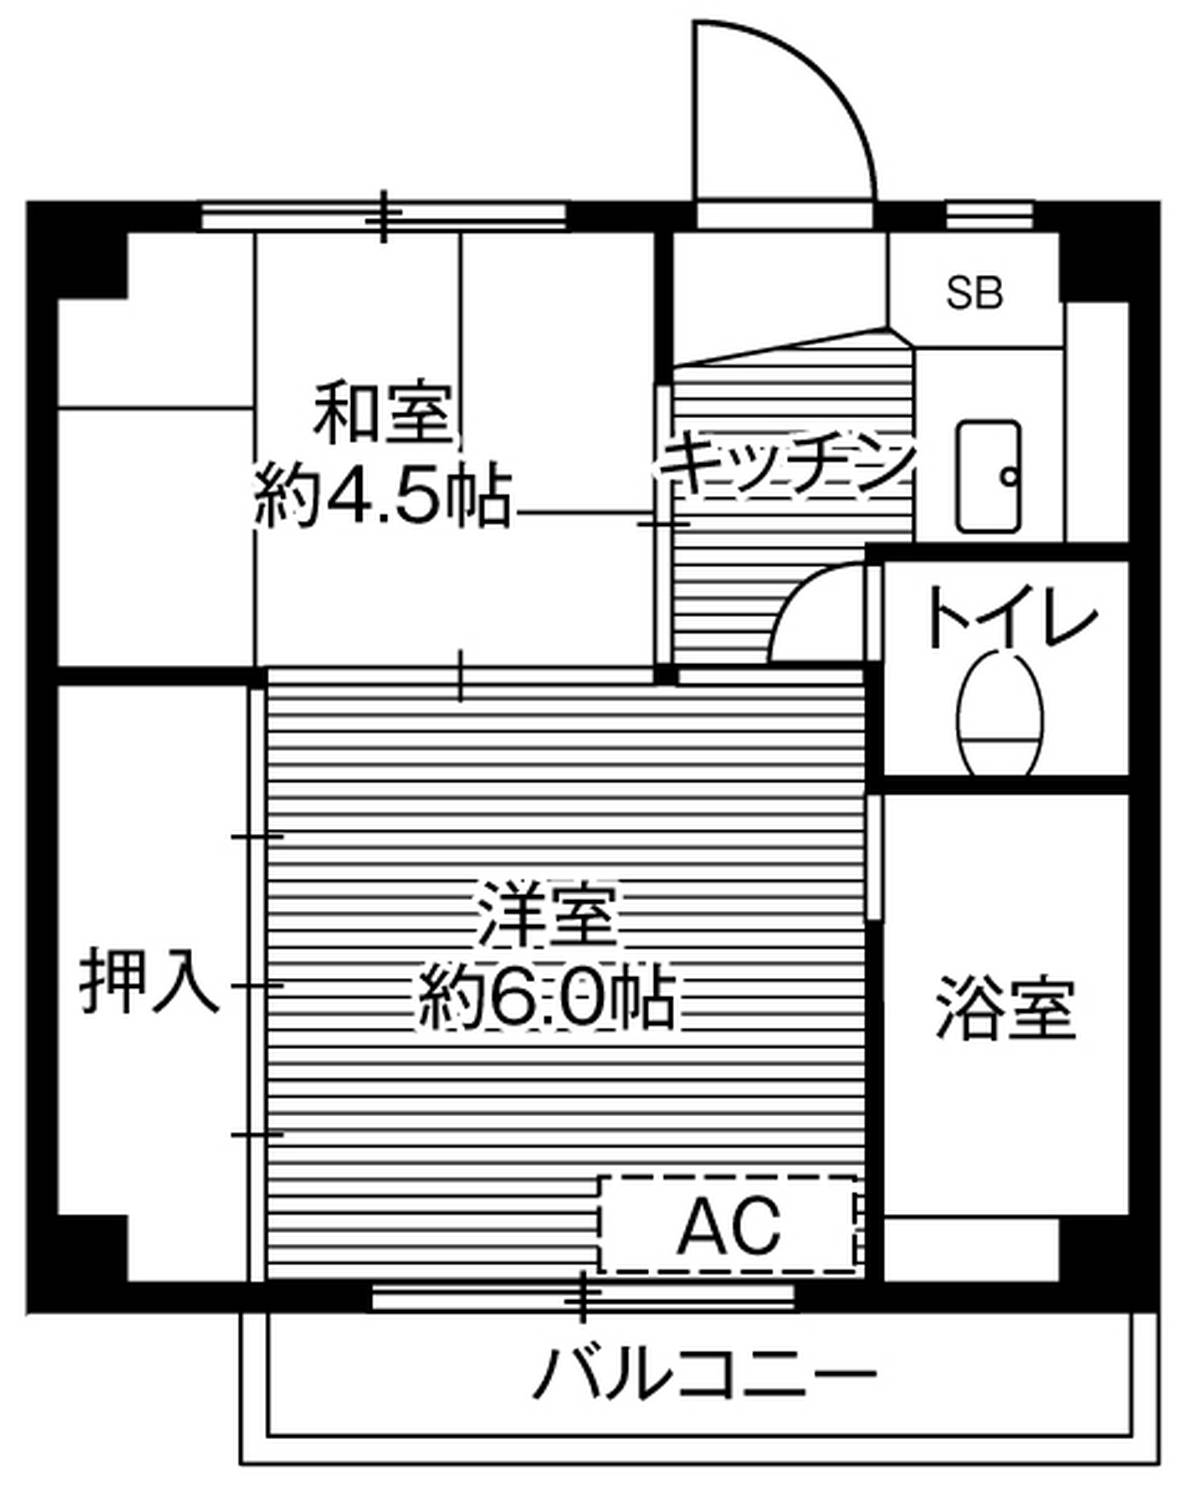 位于栃木市的Village House 沼和田的平面图2K